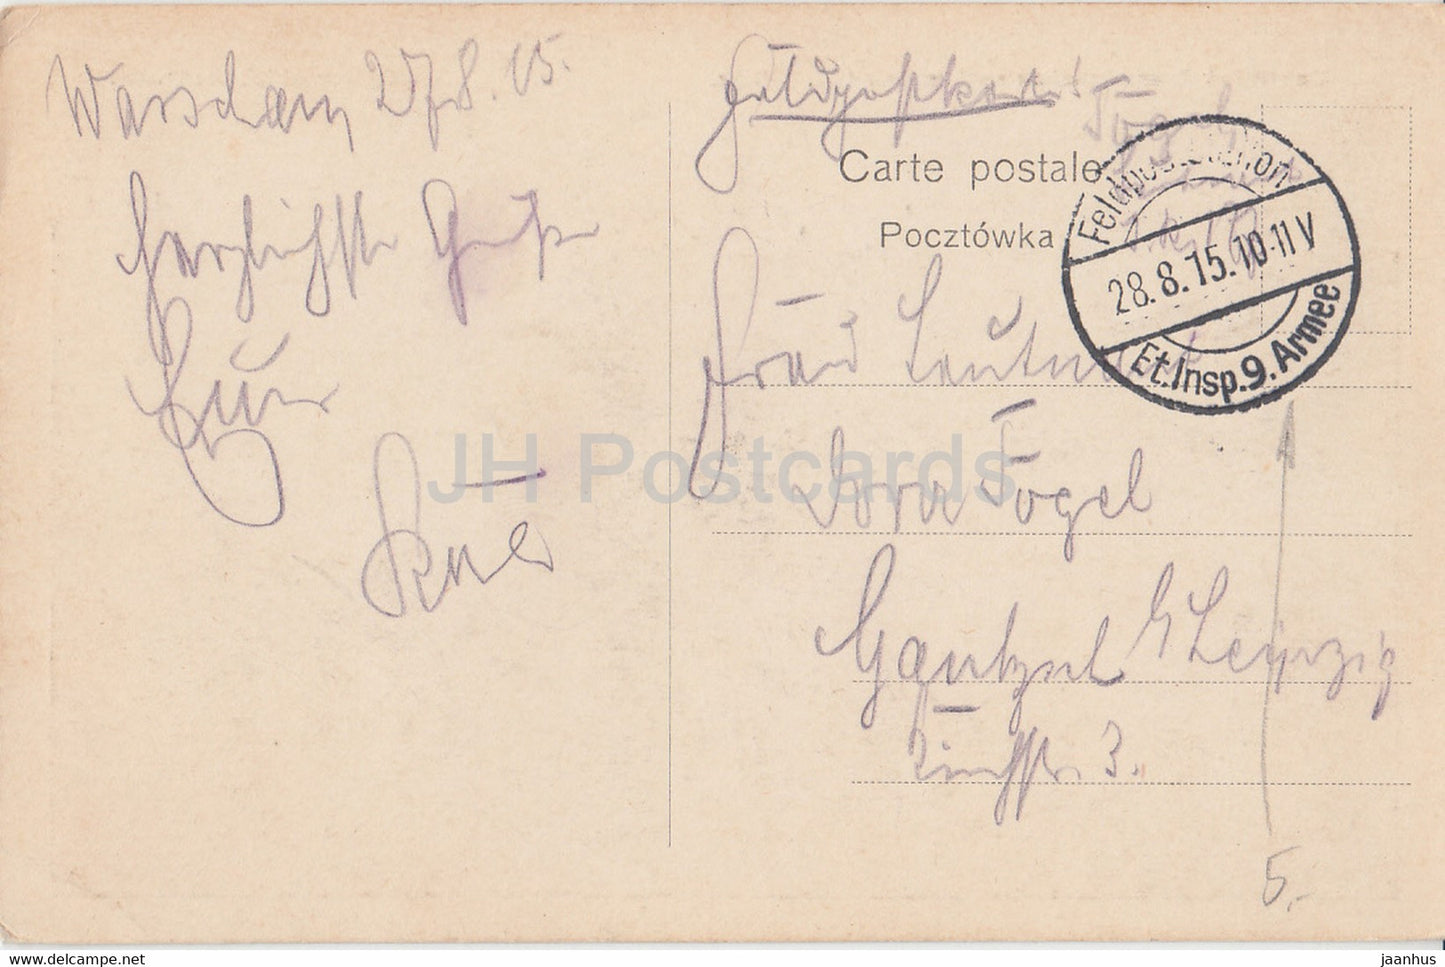 Ueberblick uber Warschau und Praga mit 2 Brucke - Ogolny widok Warszawy - Feldpost - old postcard - 1915 - Poland - used